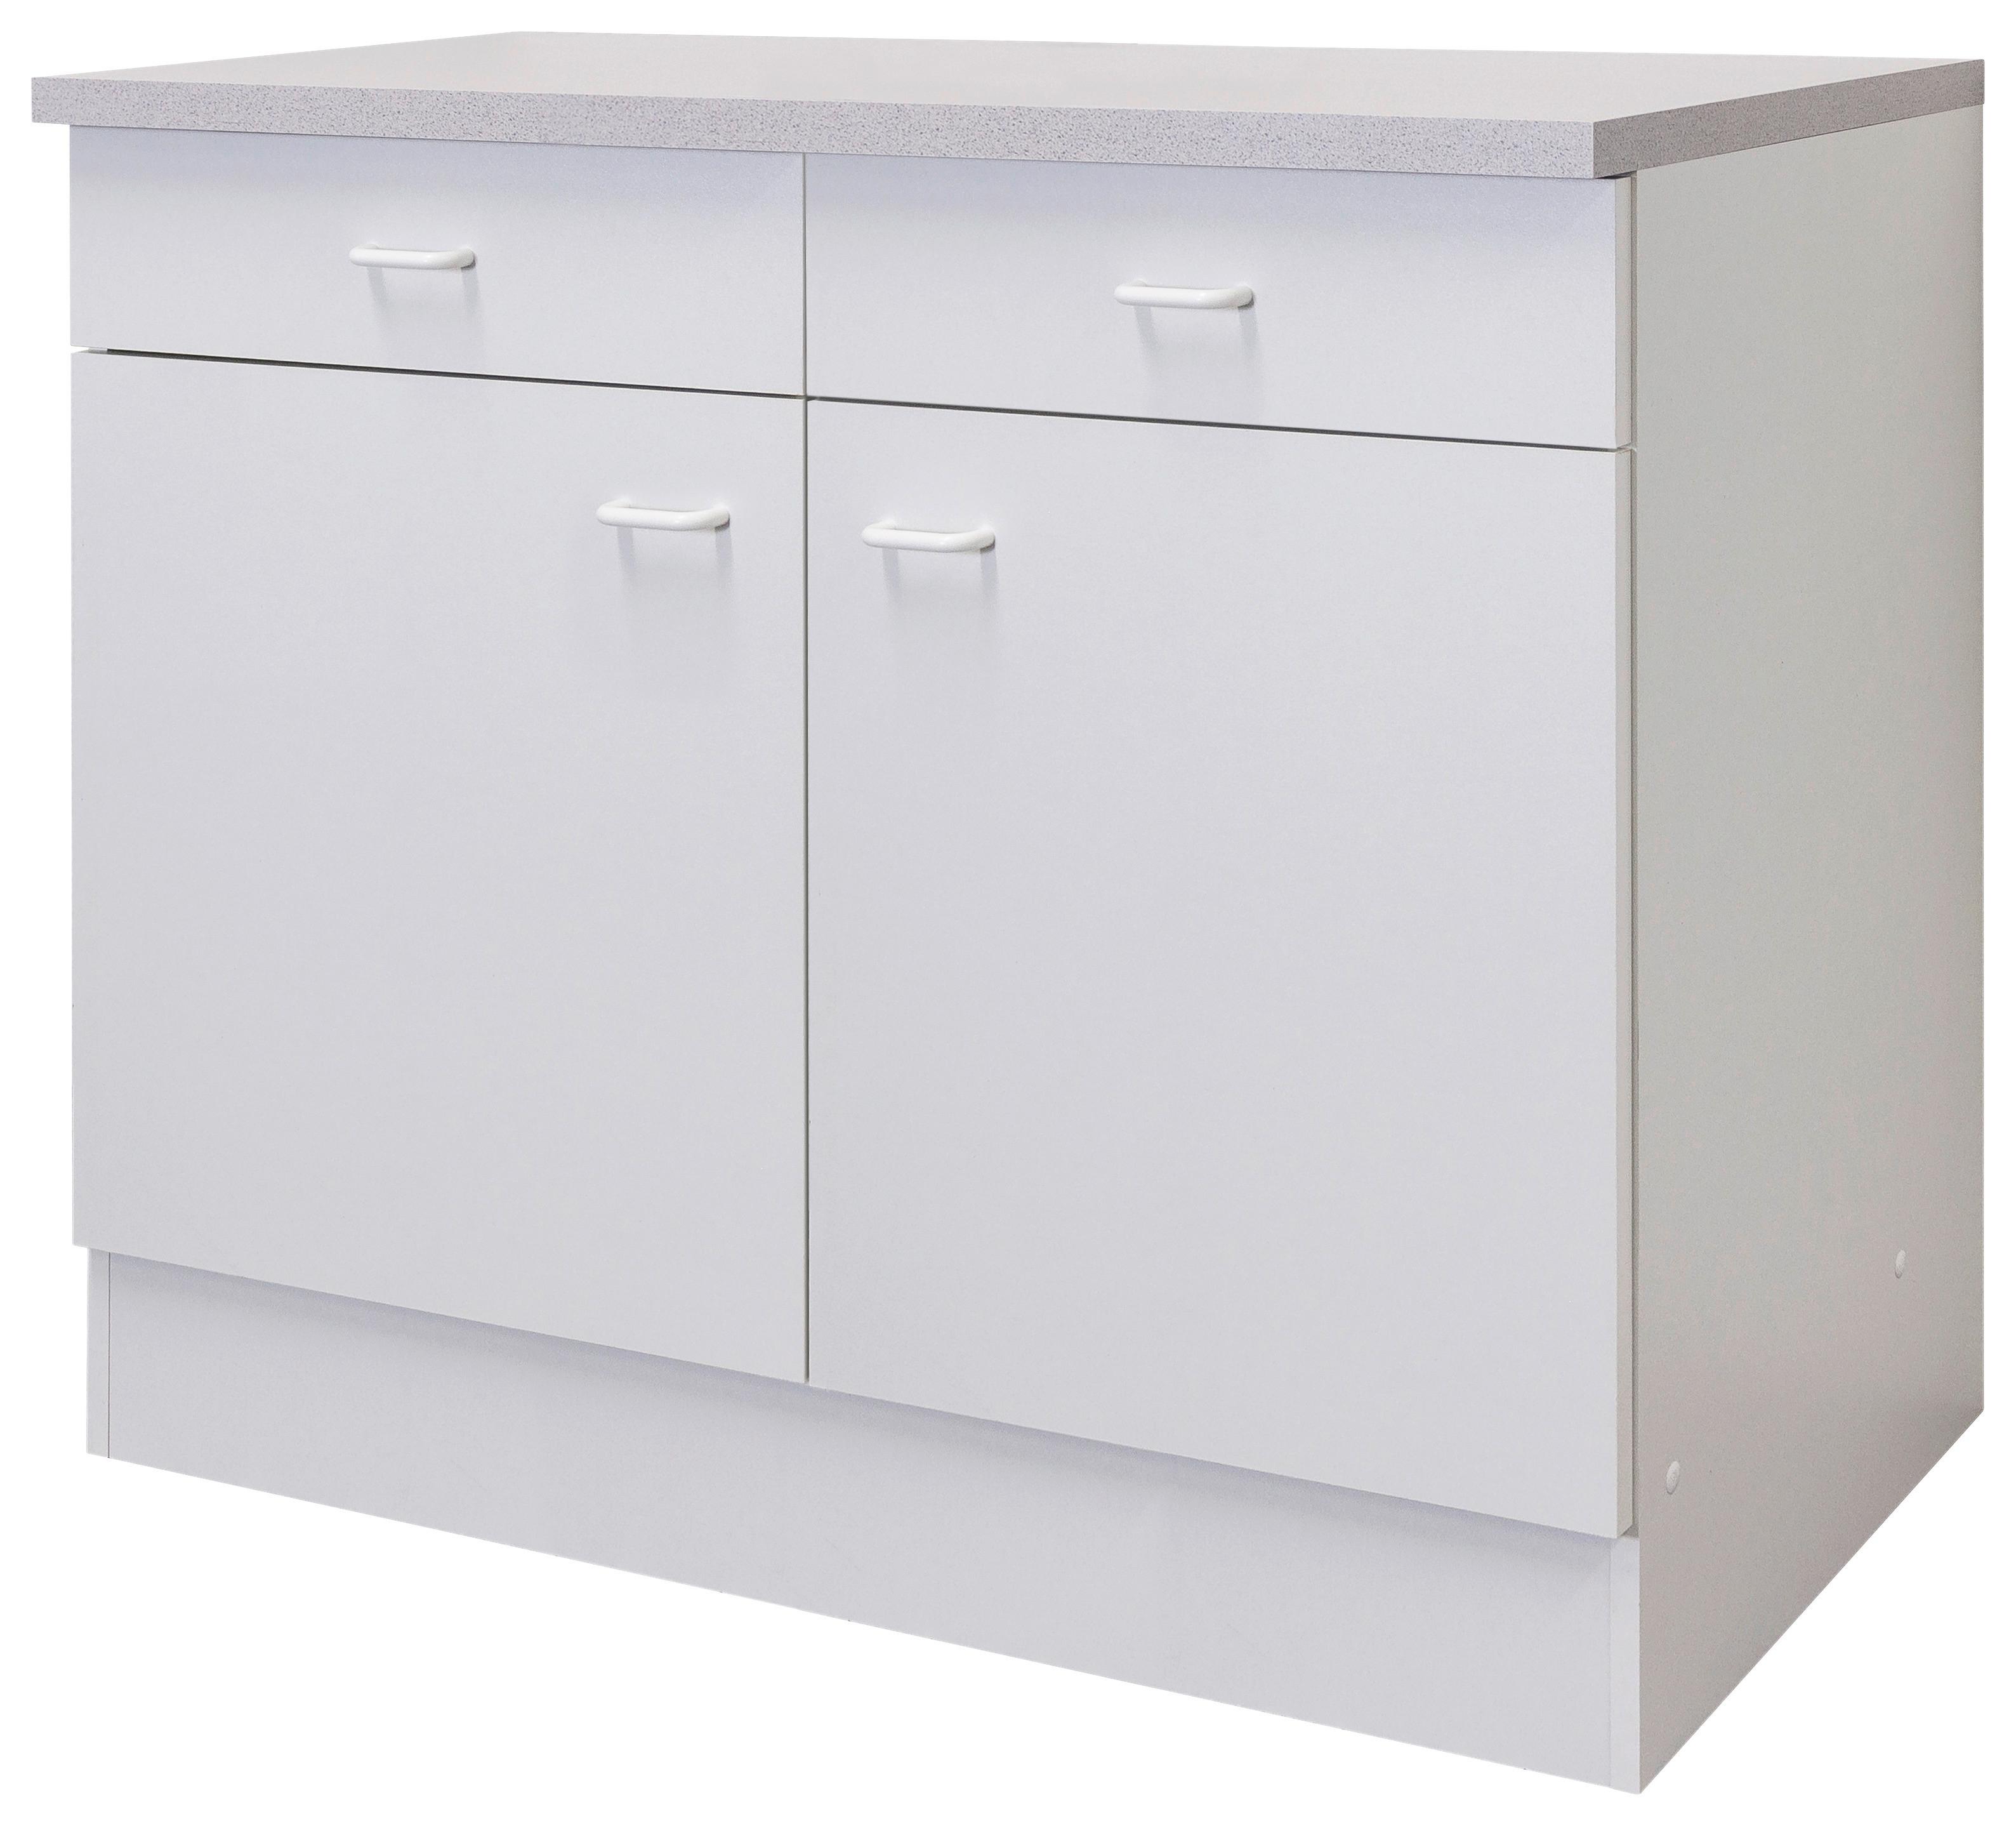 Kuchyňská Spodní Skříňka Speed - bílá, Konvenční, kompozitní dřevo/plast (100/85/47cm)